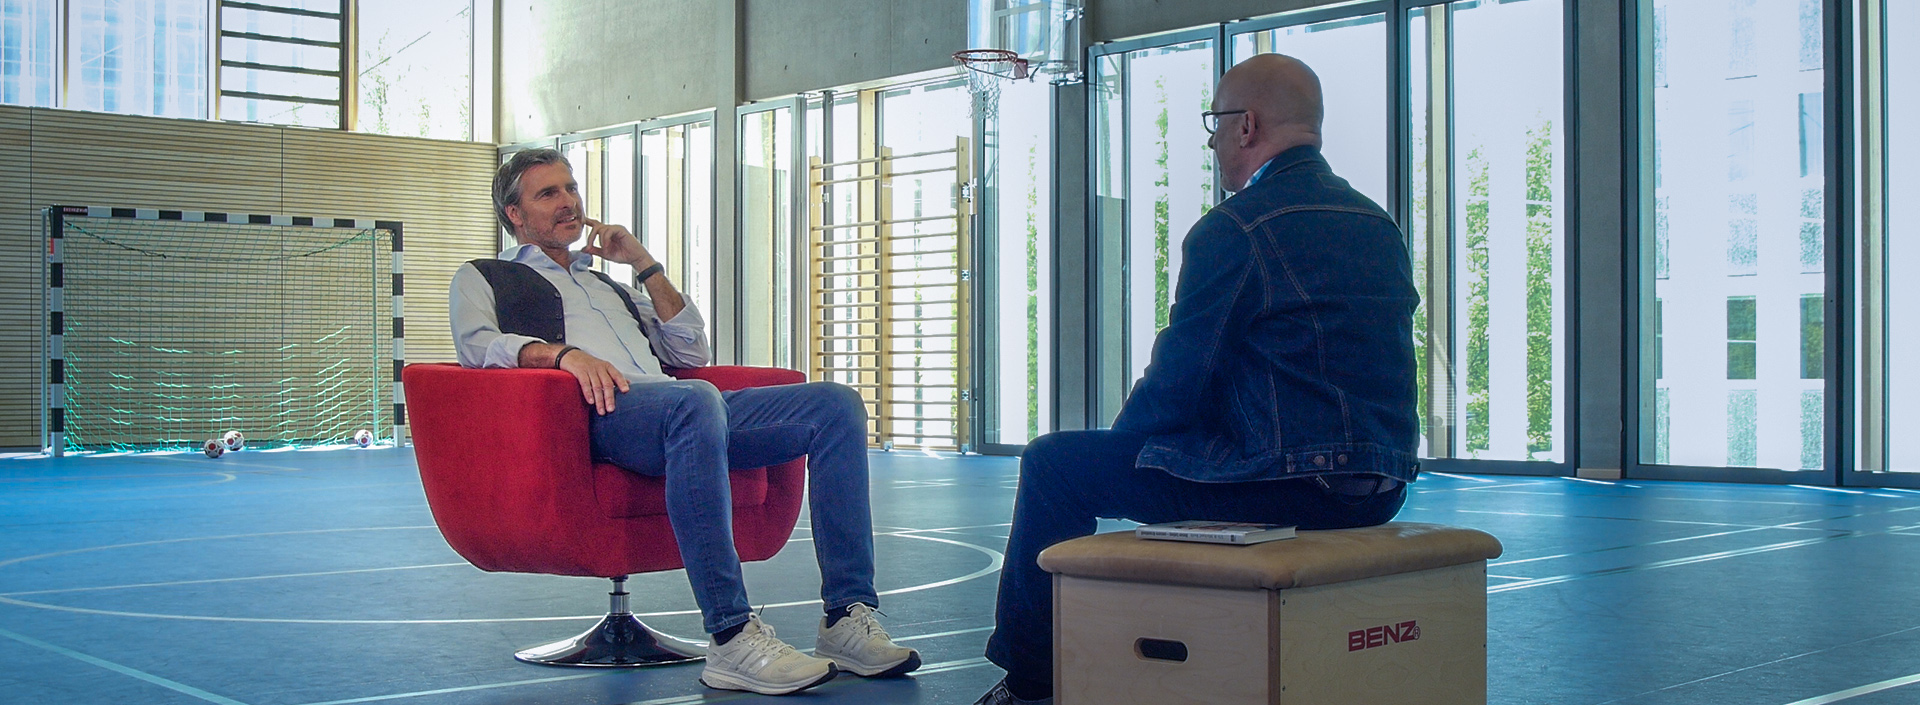 Uli Roth sitzt in einer Sporthalle im Roten Sessel für ein Interview